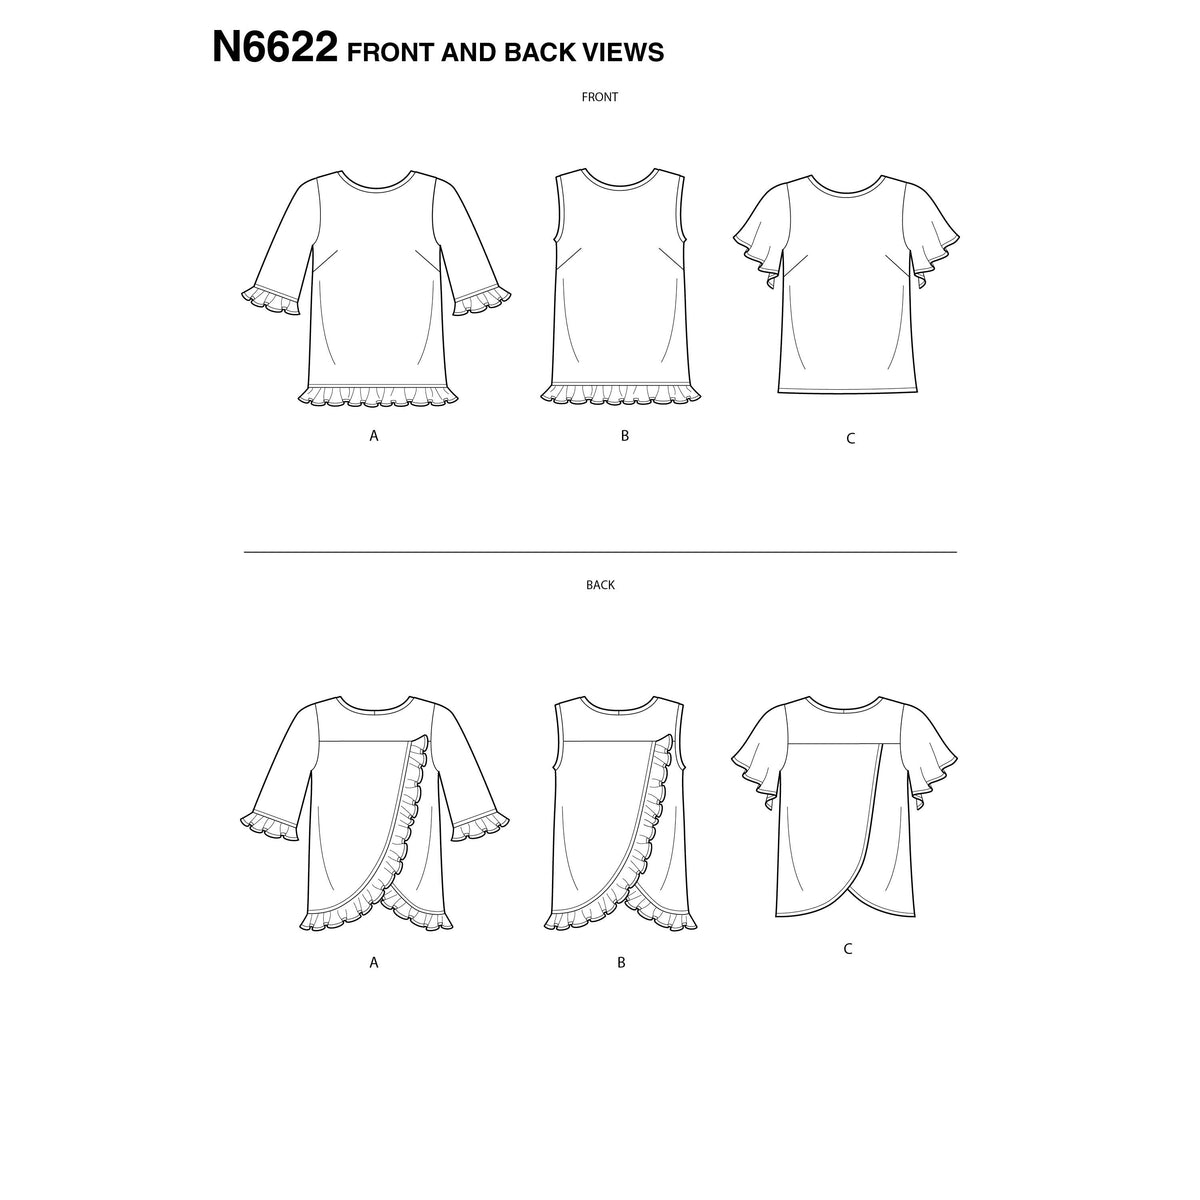 6622 New Look Sewing Pattern N6622 Misses' Tops